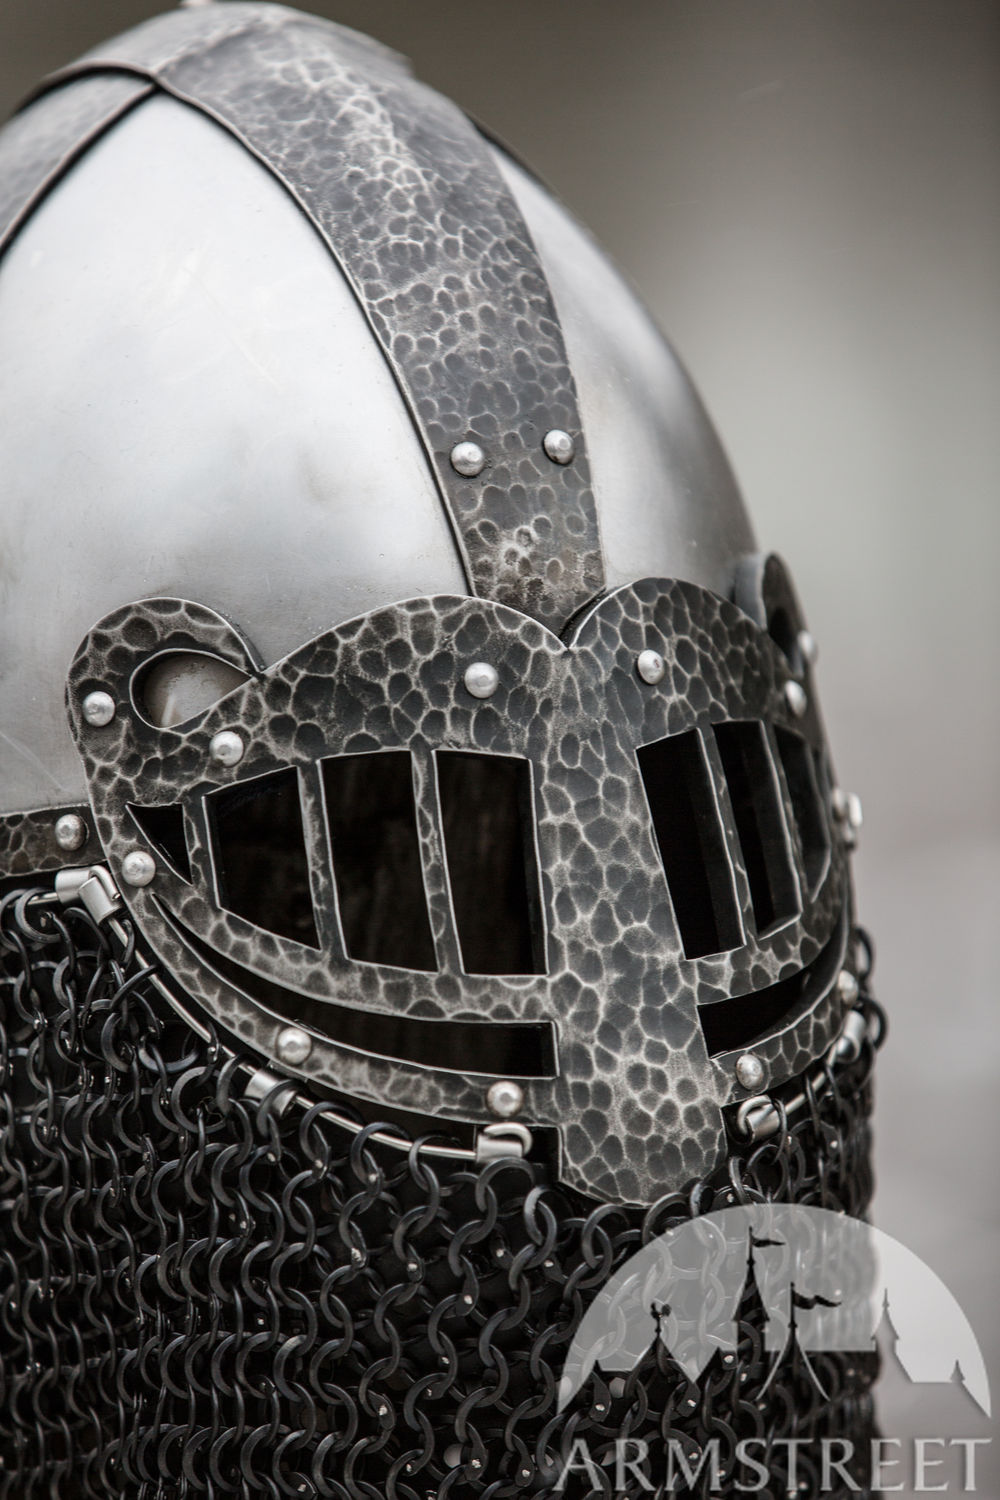 Viking Style Helmet “Ragnvaldur the Traveller”